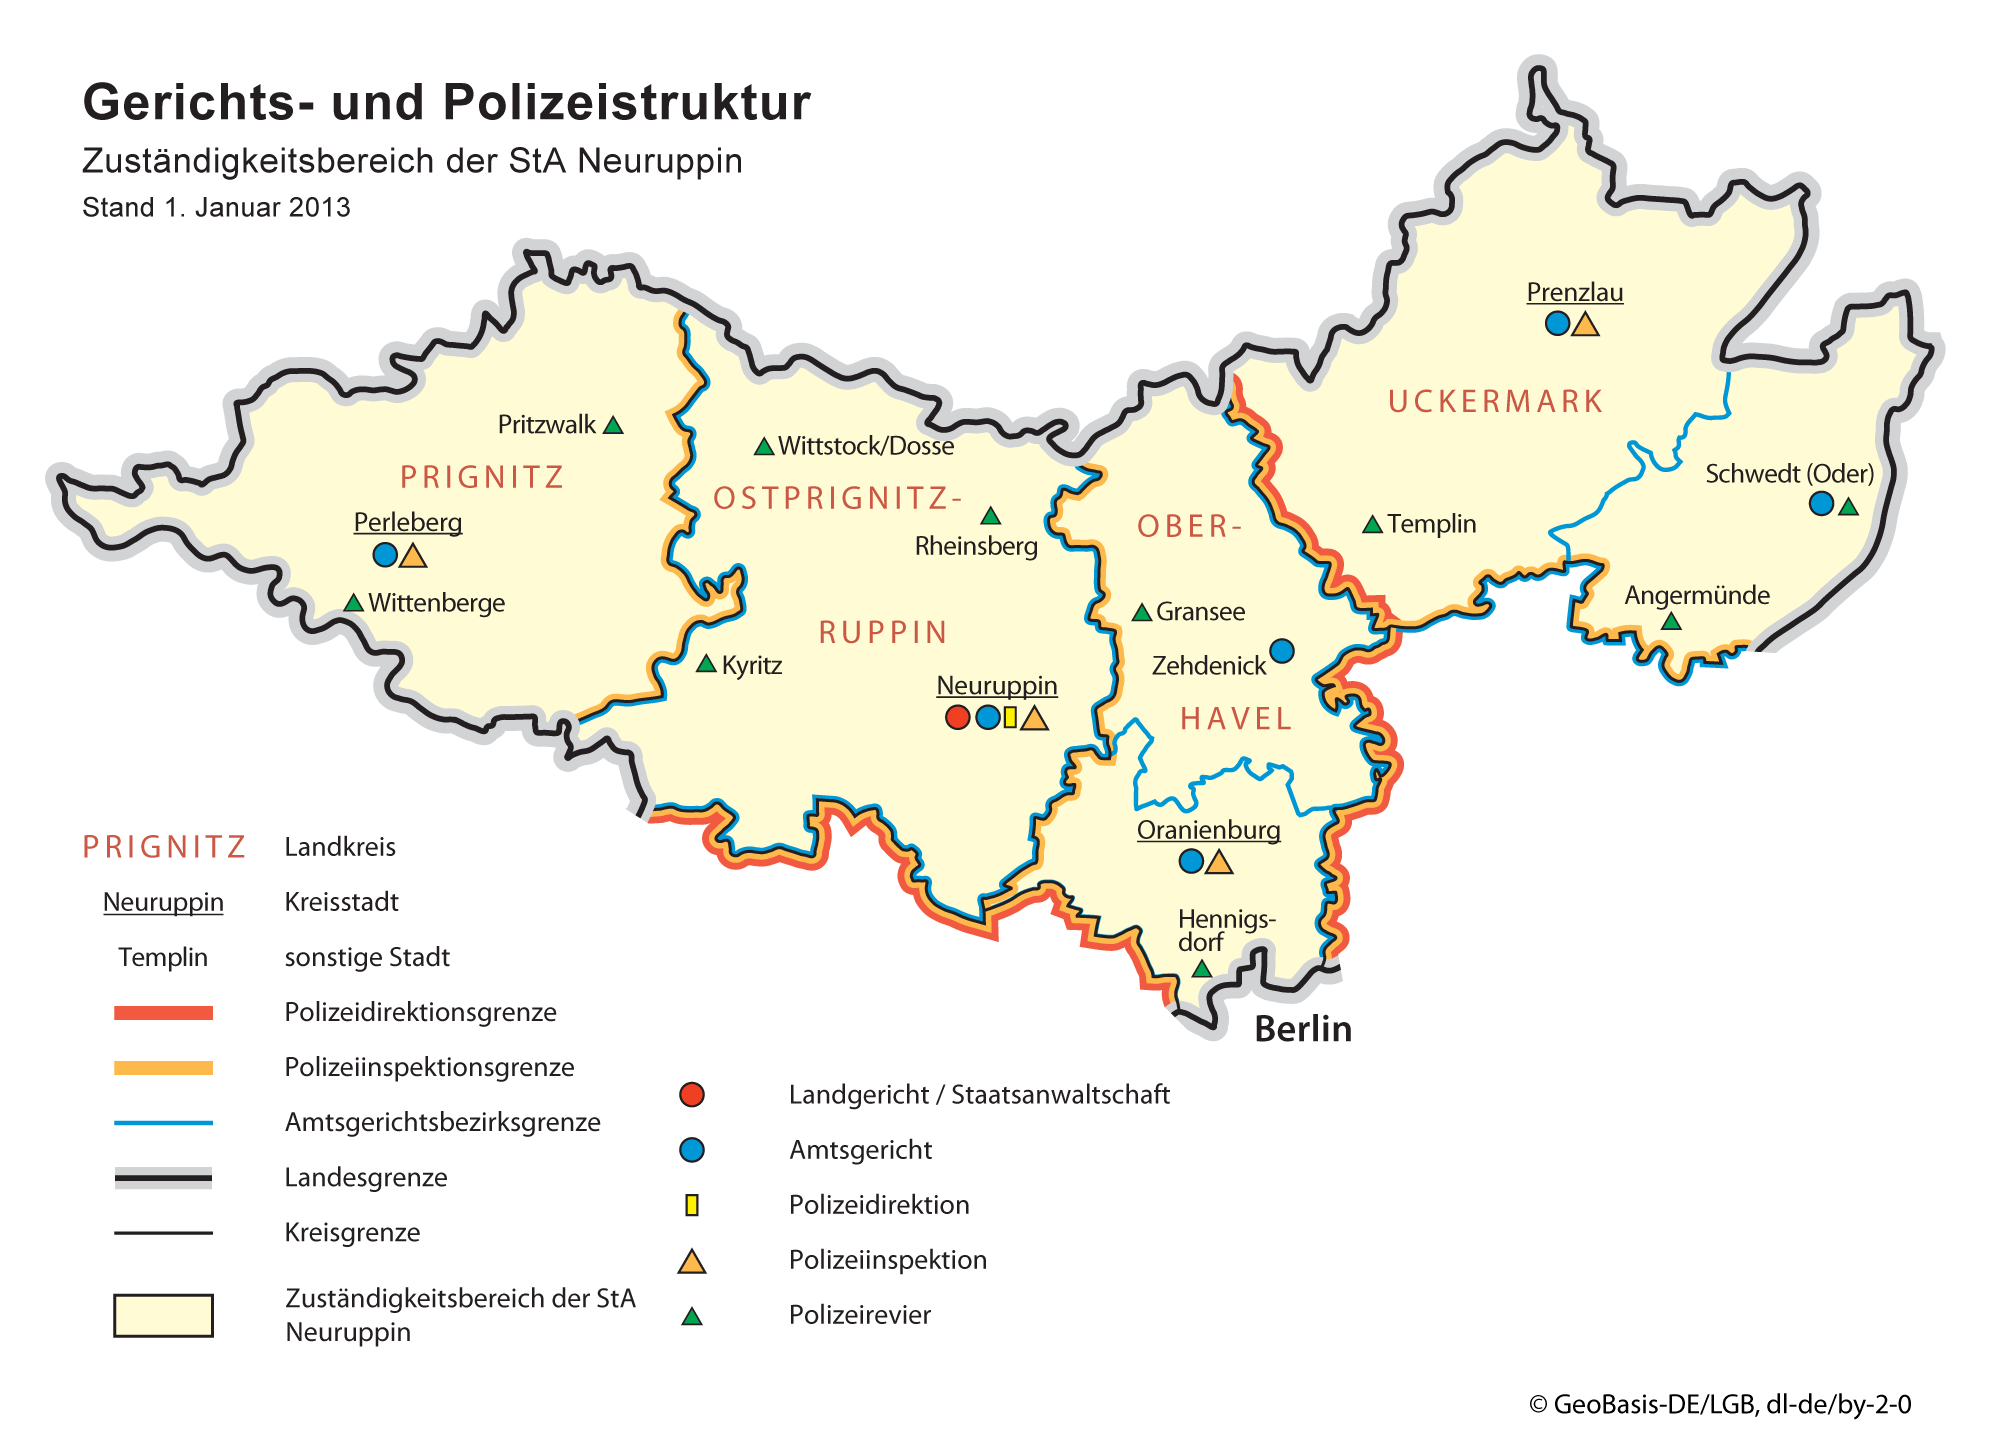 Karte zu der Gerichts- und Polizeistruktur für den Zuständigkeitsbereich der Staatsanwaltschaft Neuruppin